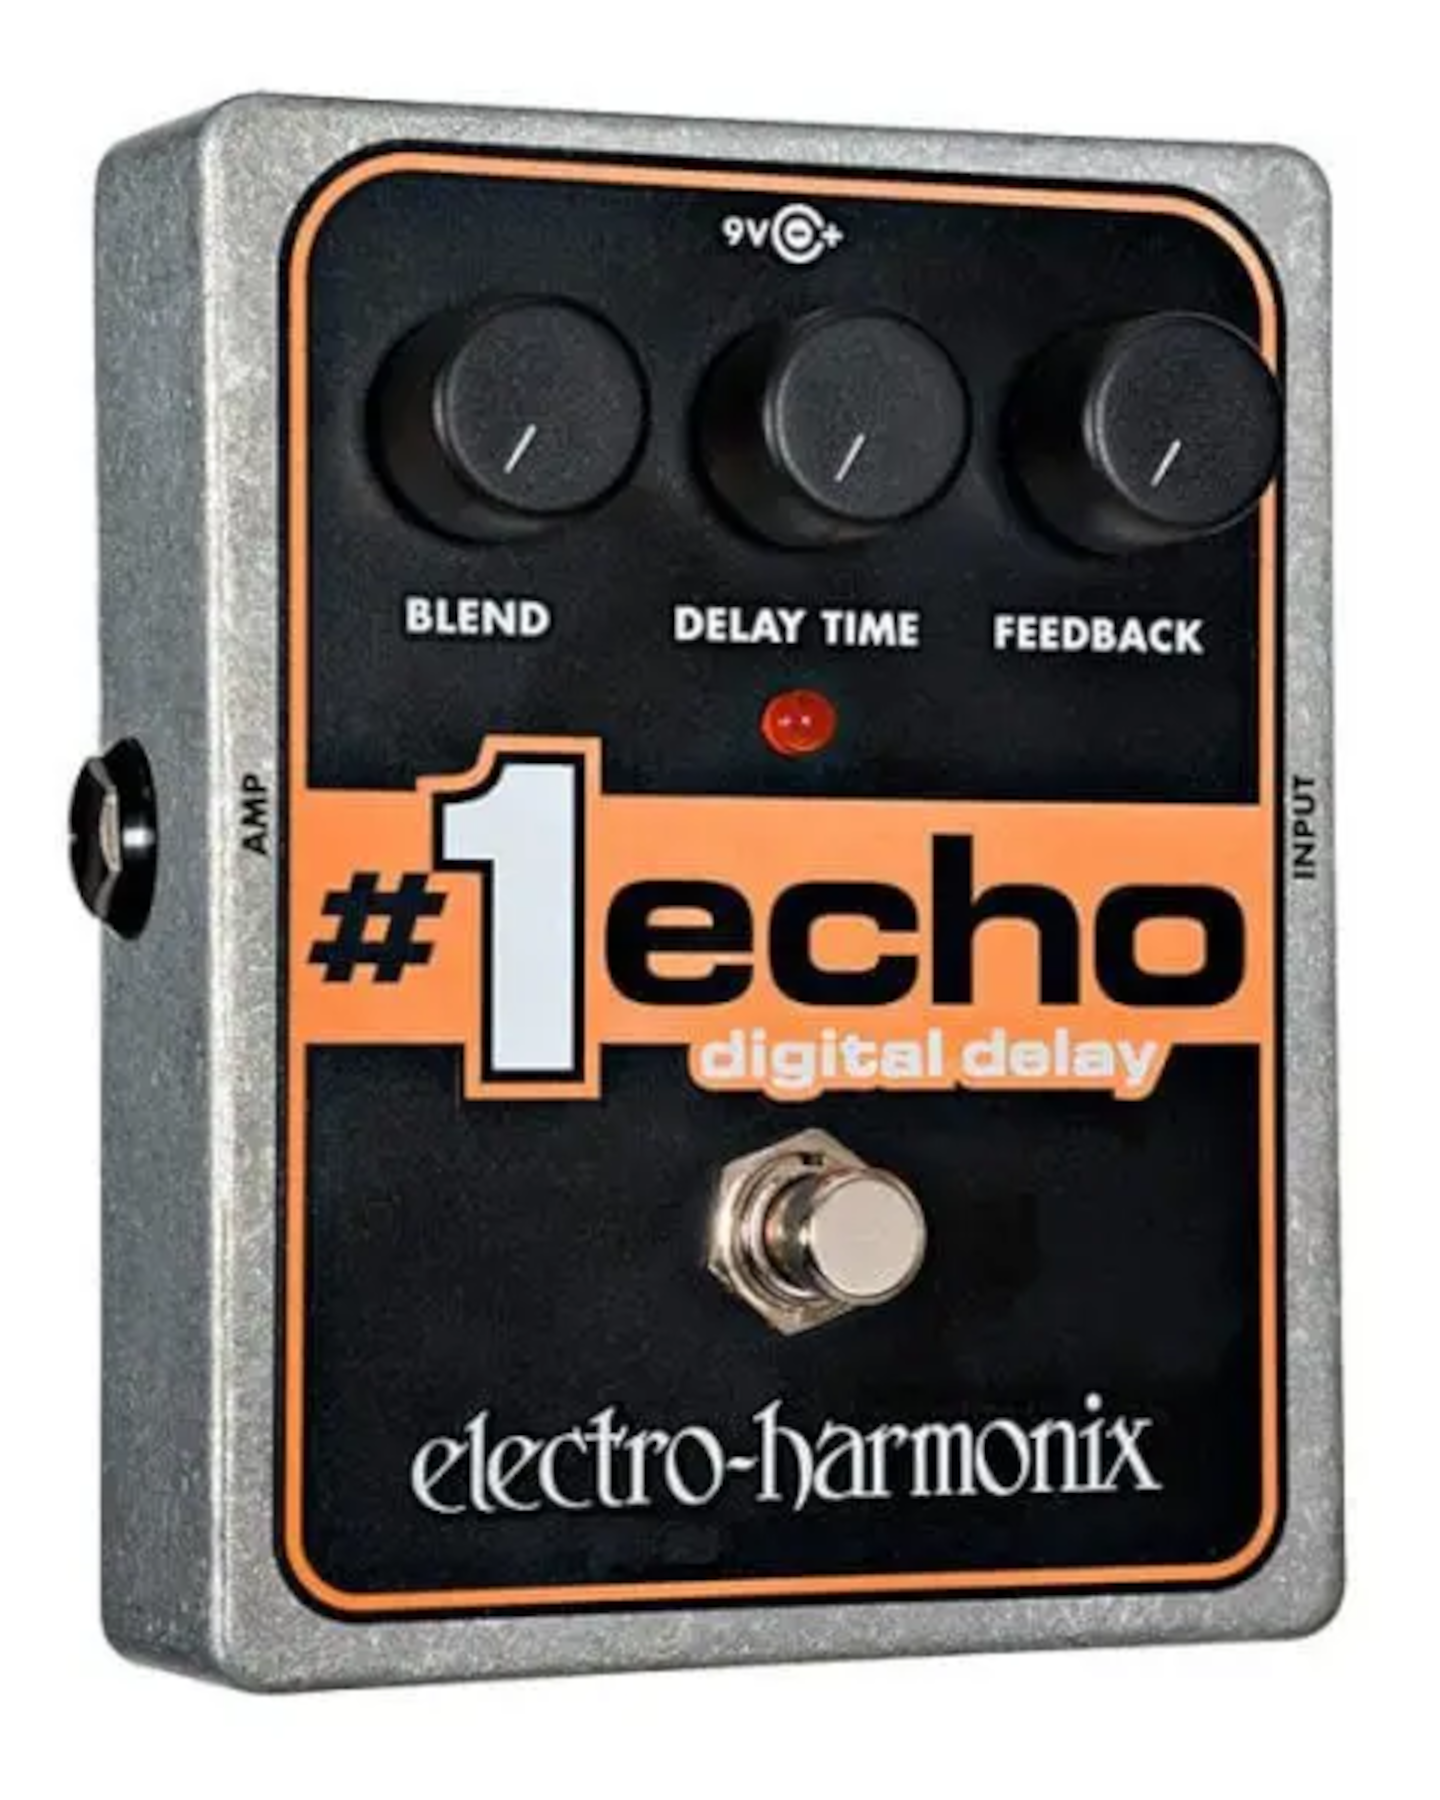 #1 Echo Digital Delay